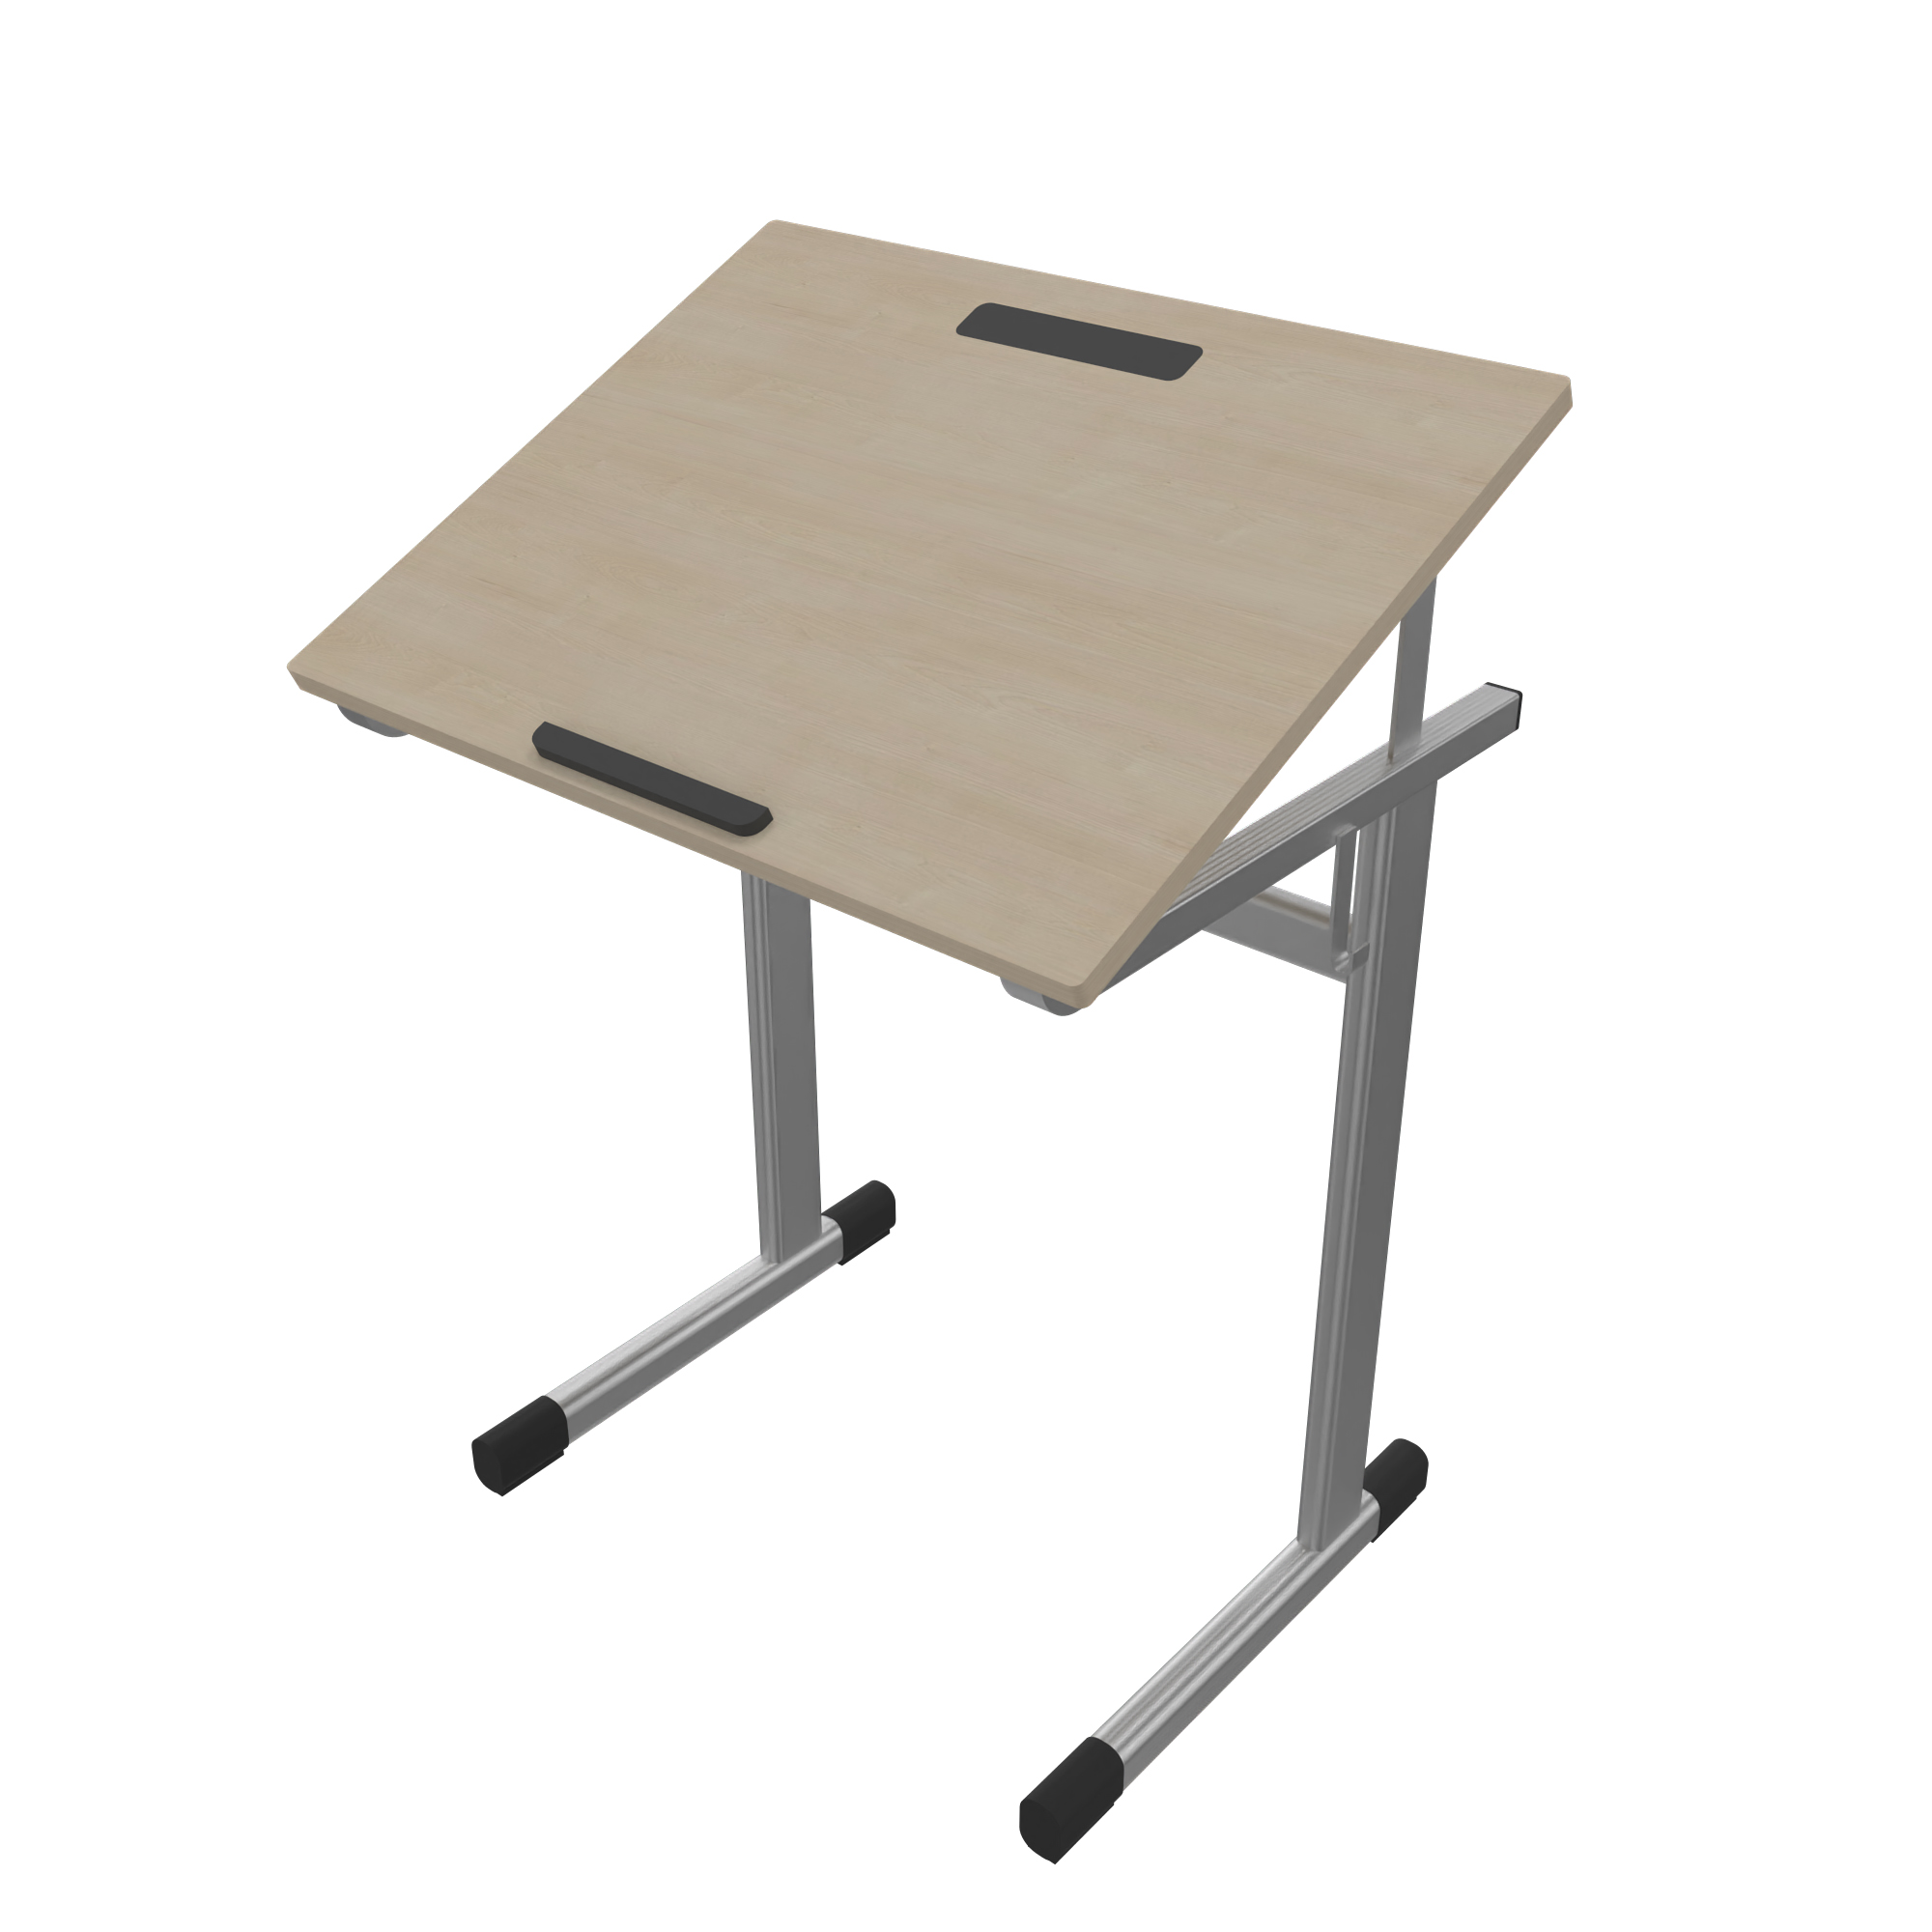 Schülertisch mit neigbarer Tischplatte Modell Aluflex